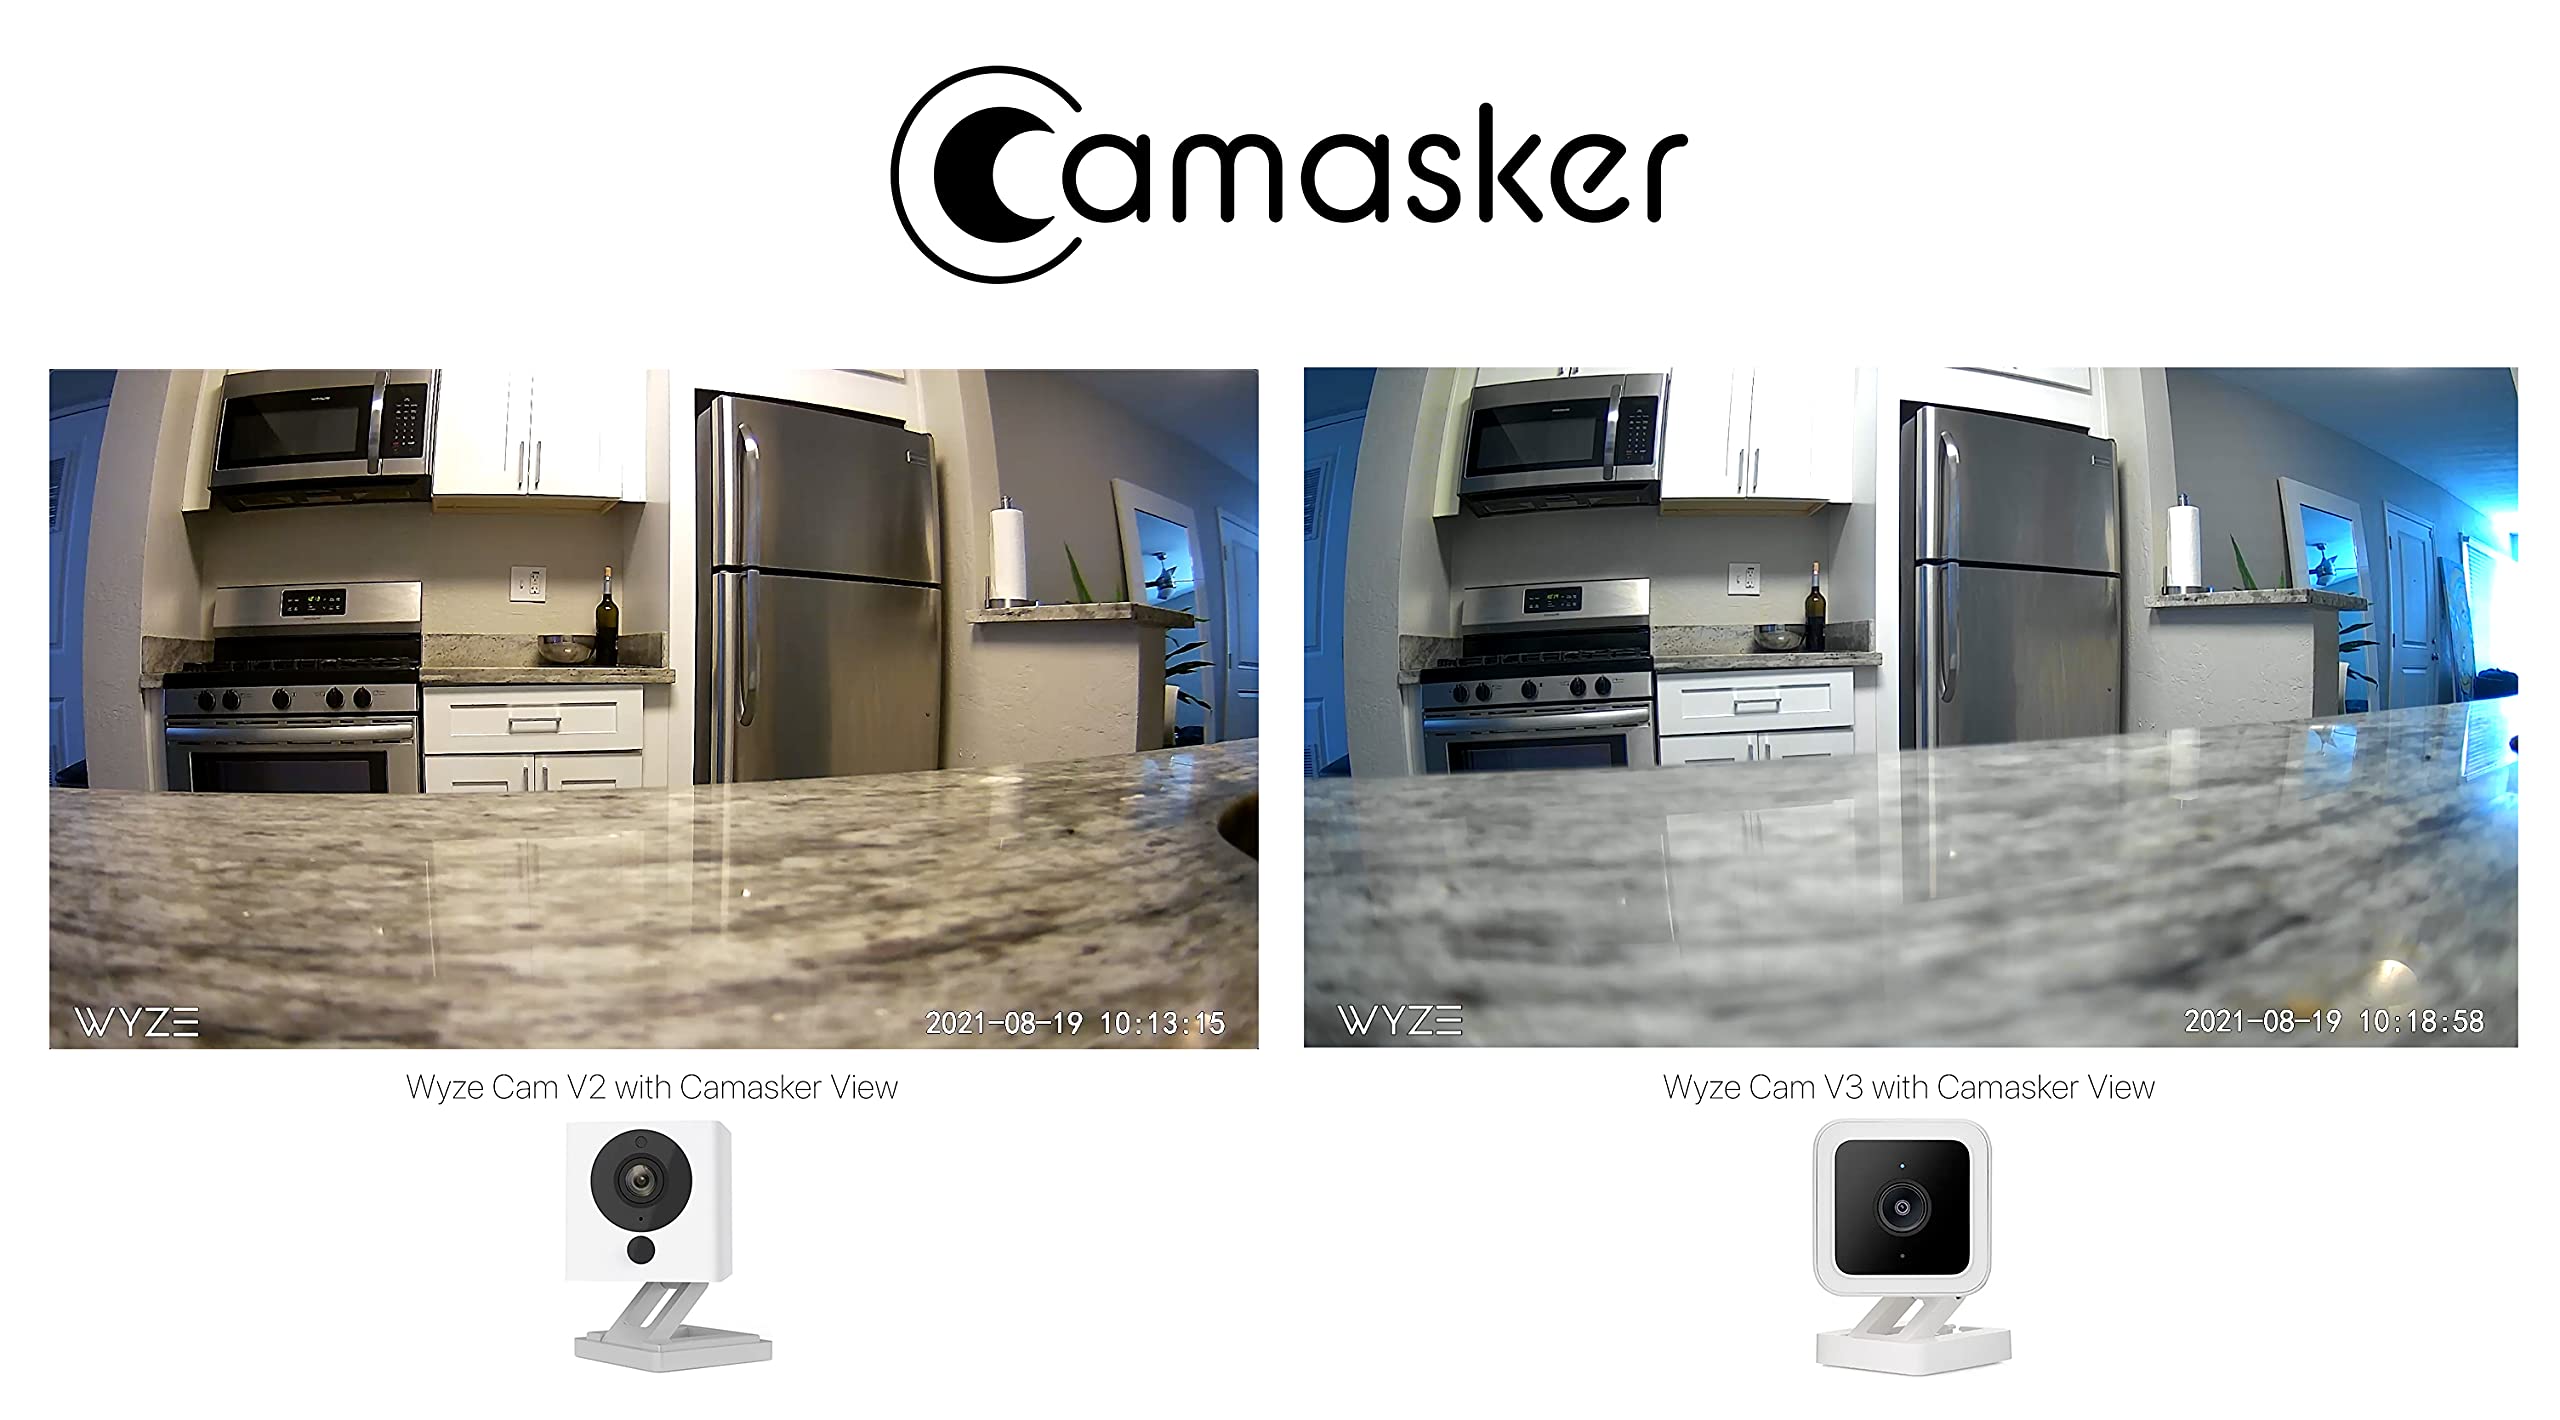 Camasker for Wyze & Roku SE Cam - Cover, Disguise & Camouflage Wyze or Roku SE Camera - Artificial Plant Housing Case for Wyze Cam V3, V2 & Roku SE